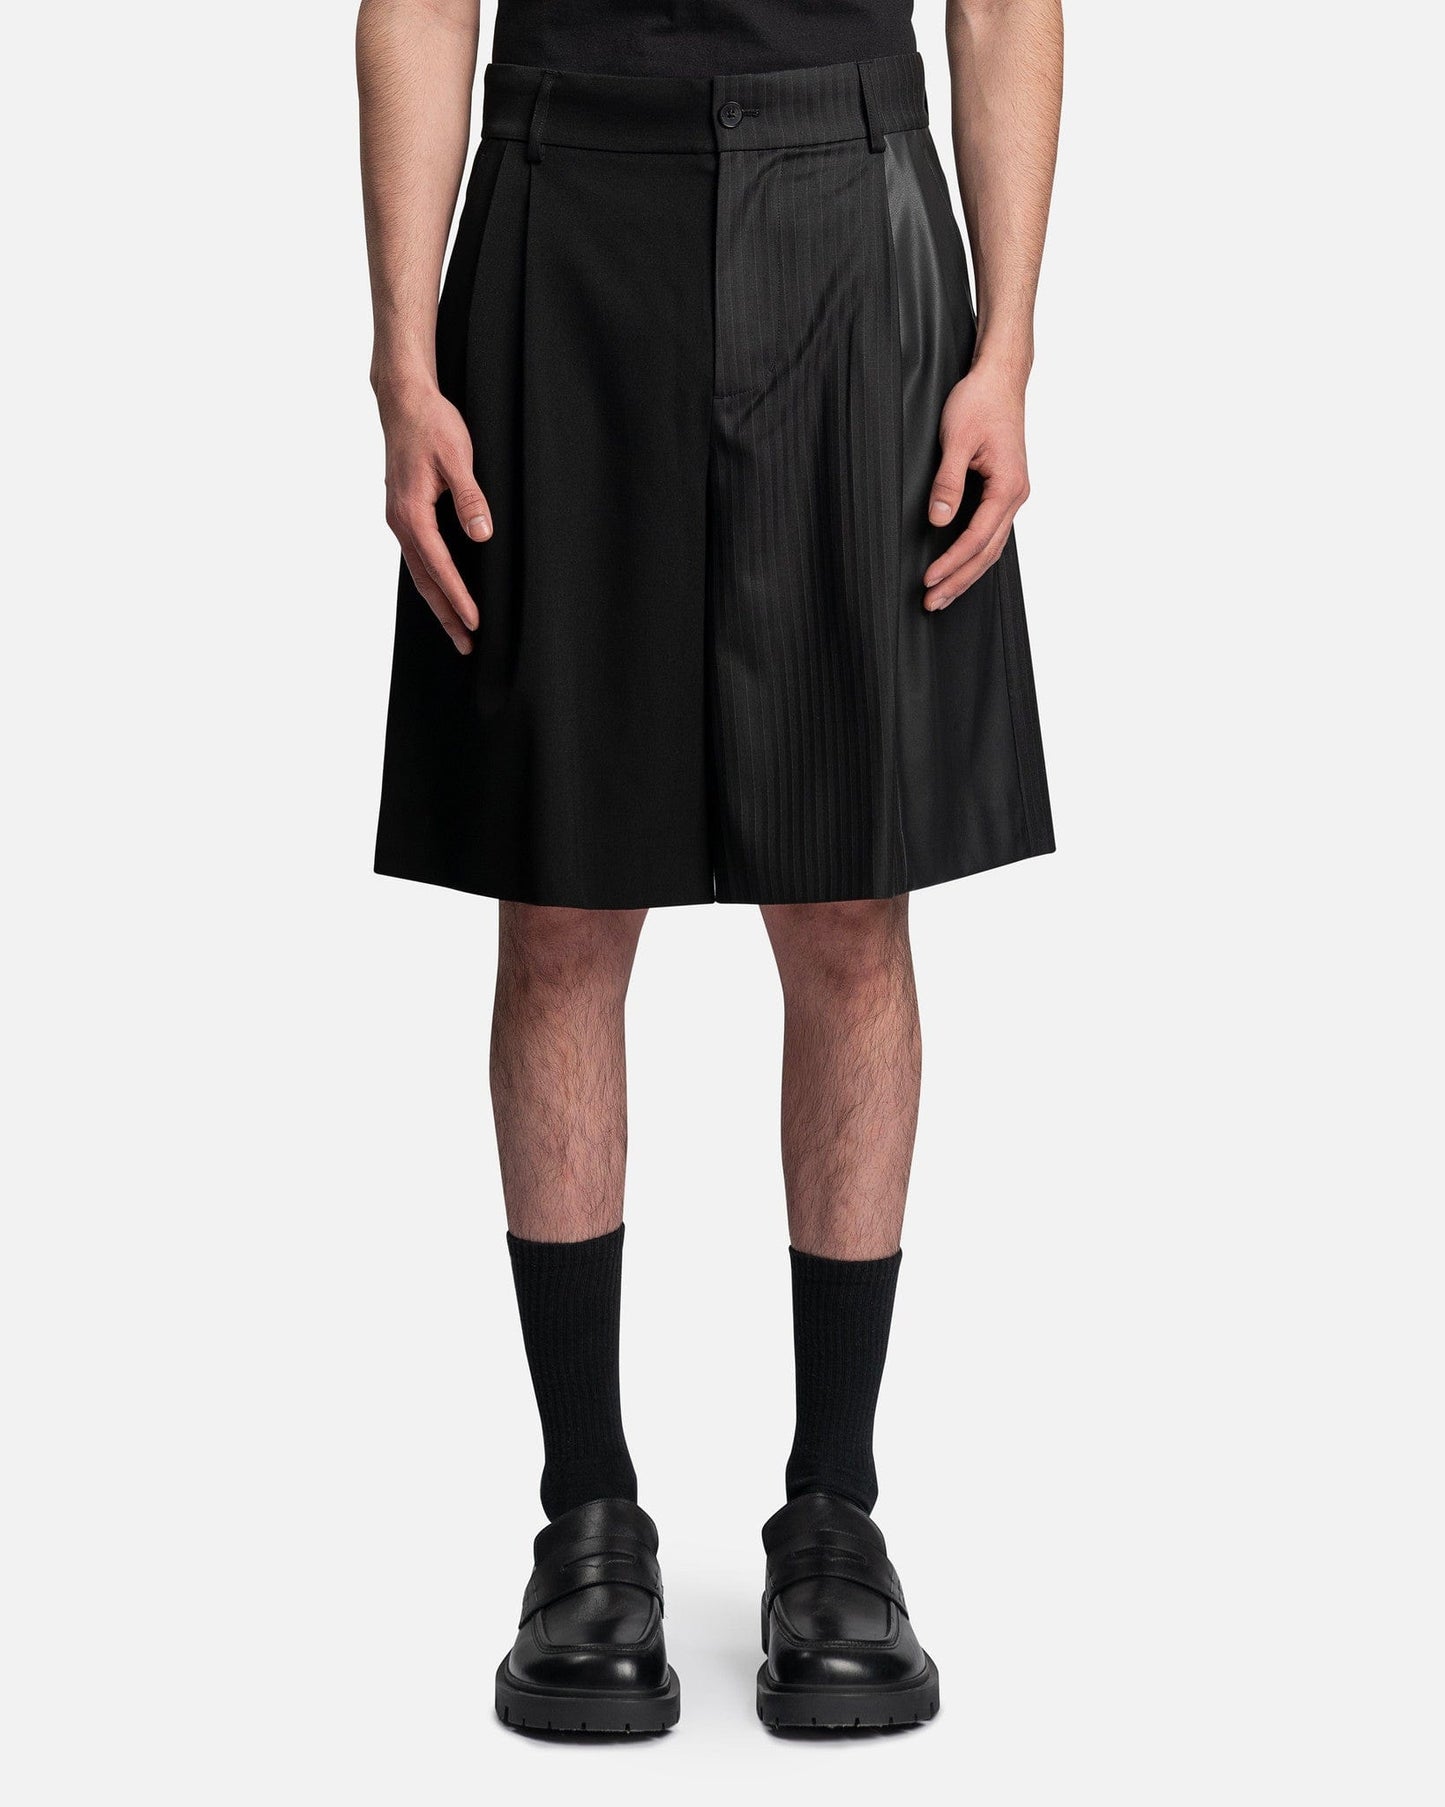 Feng Chen Wang Men's Shorts Pinstripe Shorts in Black